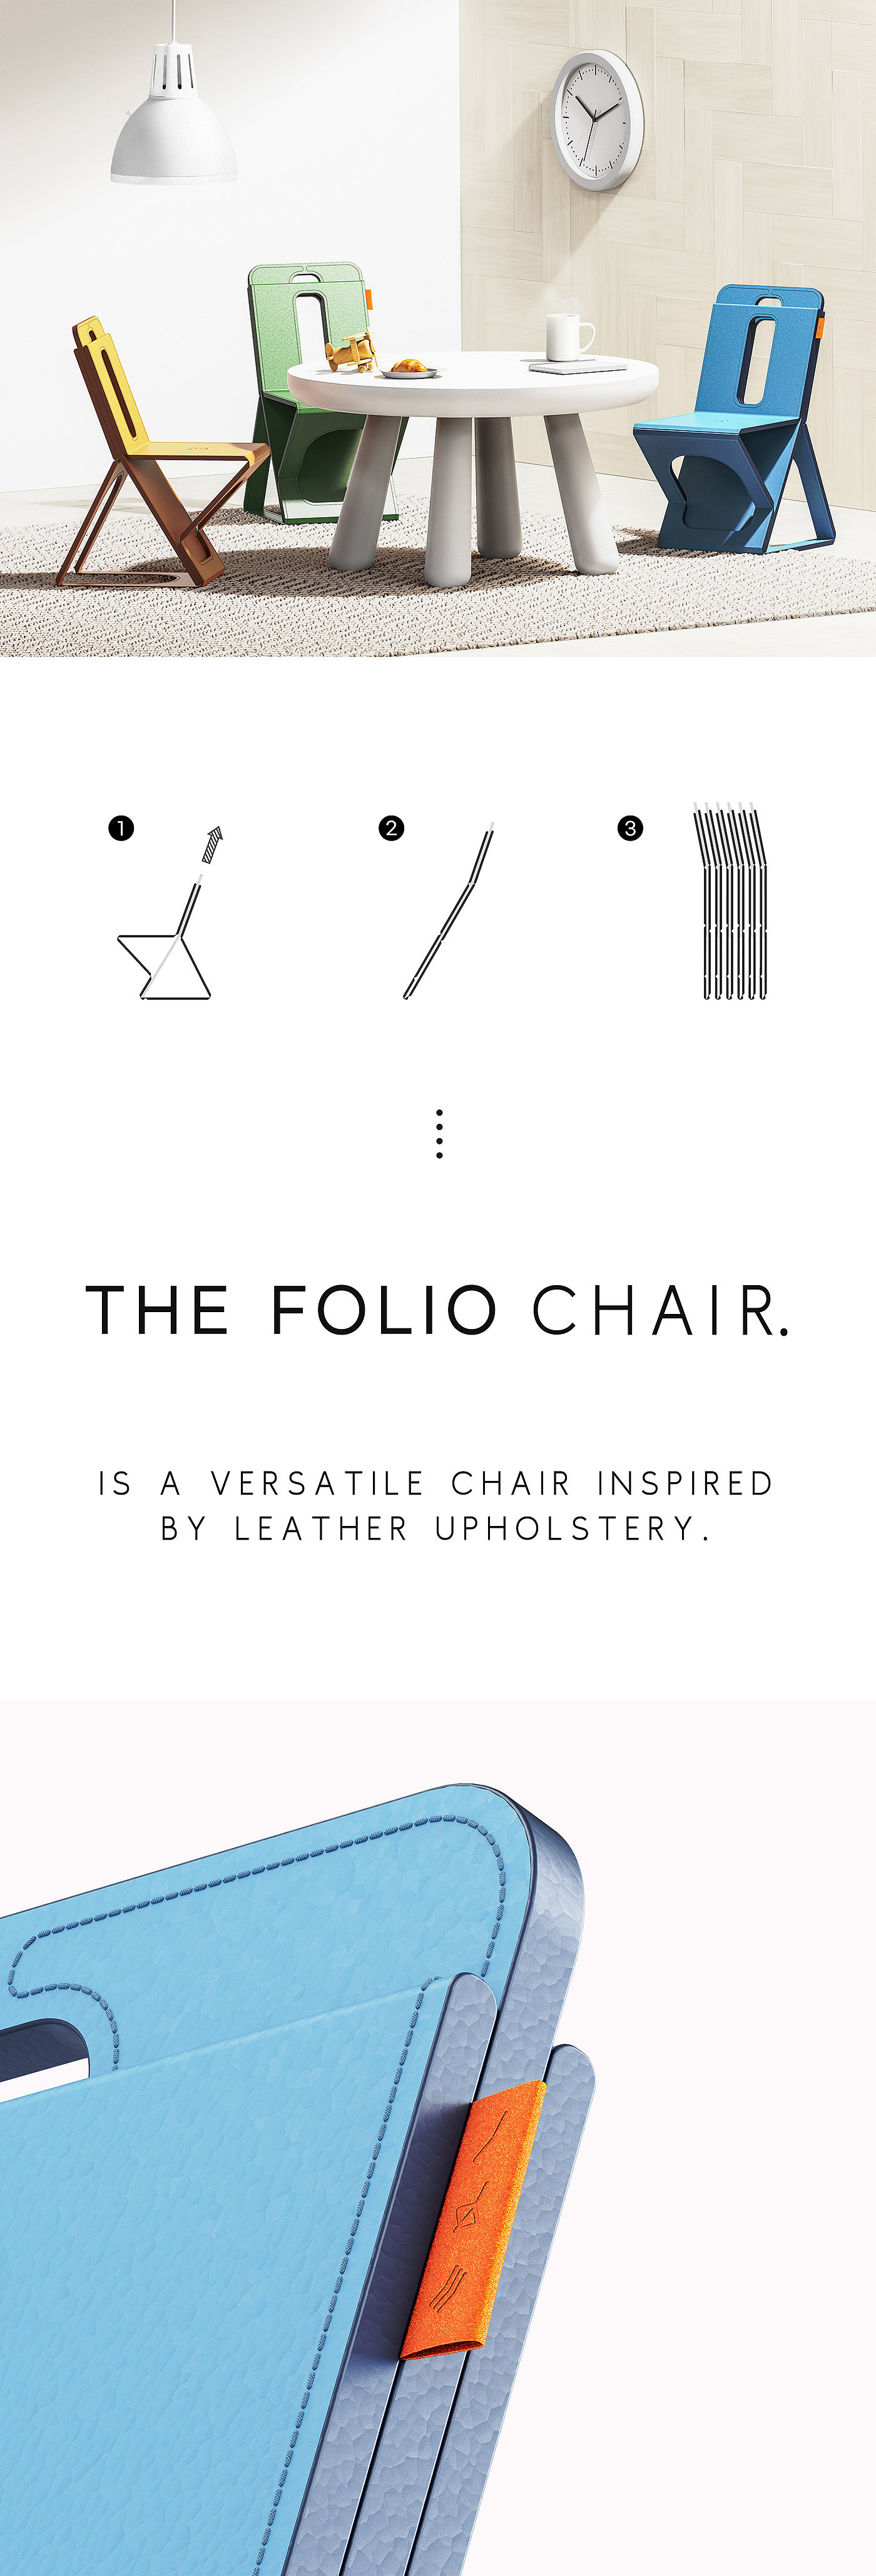 椅子，家具，家具设计，产品设计，工业设计，Folio，